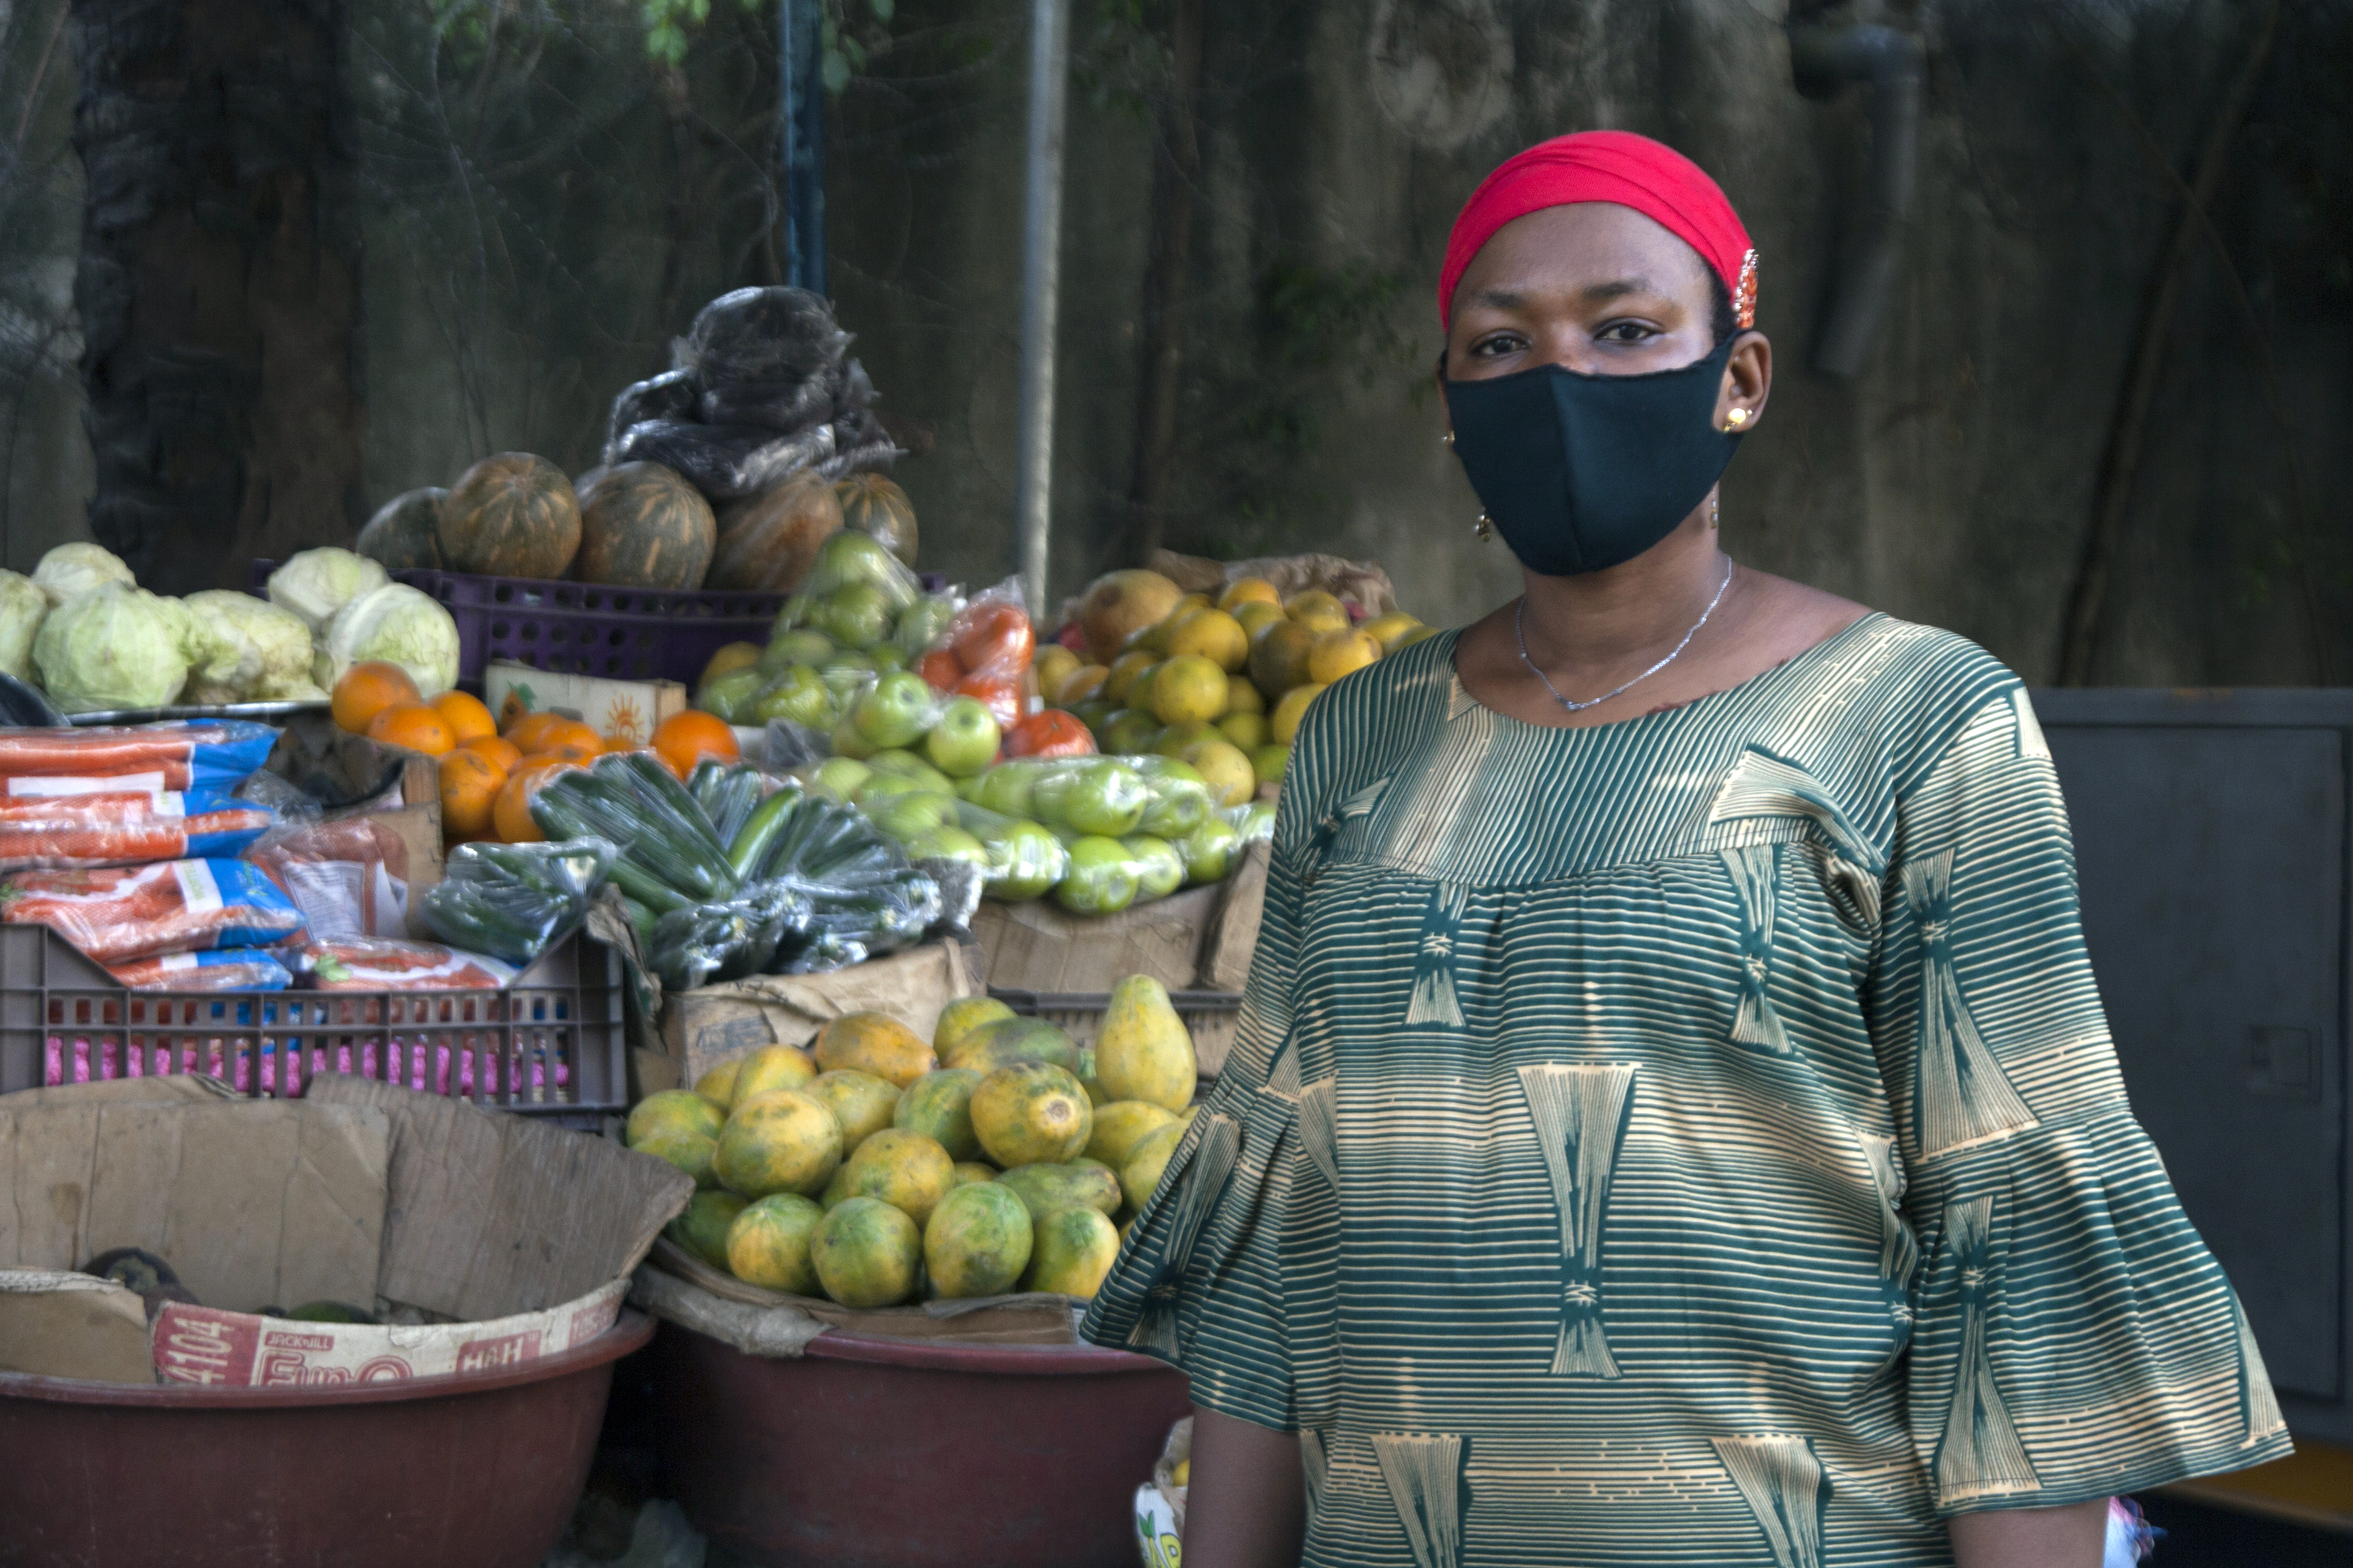 Vendeur portant un masque en C'ote d'Ivoire